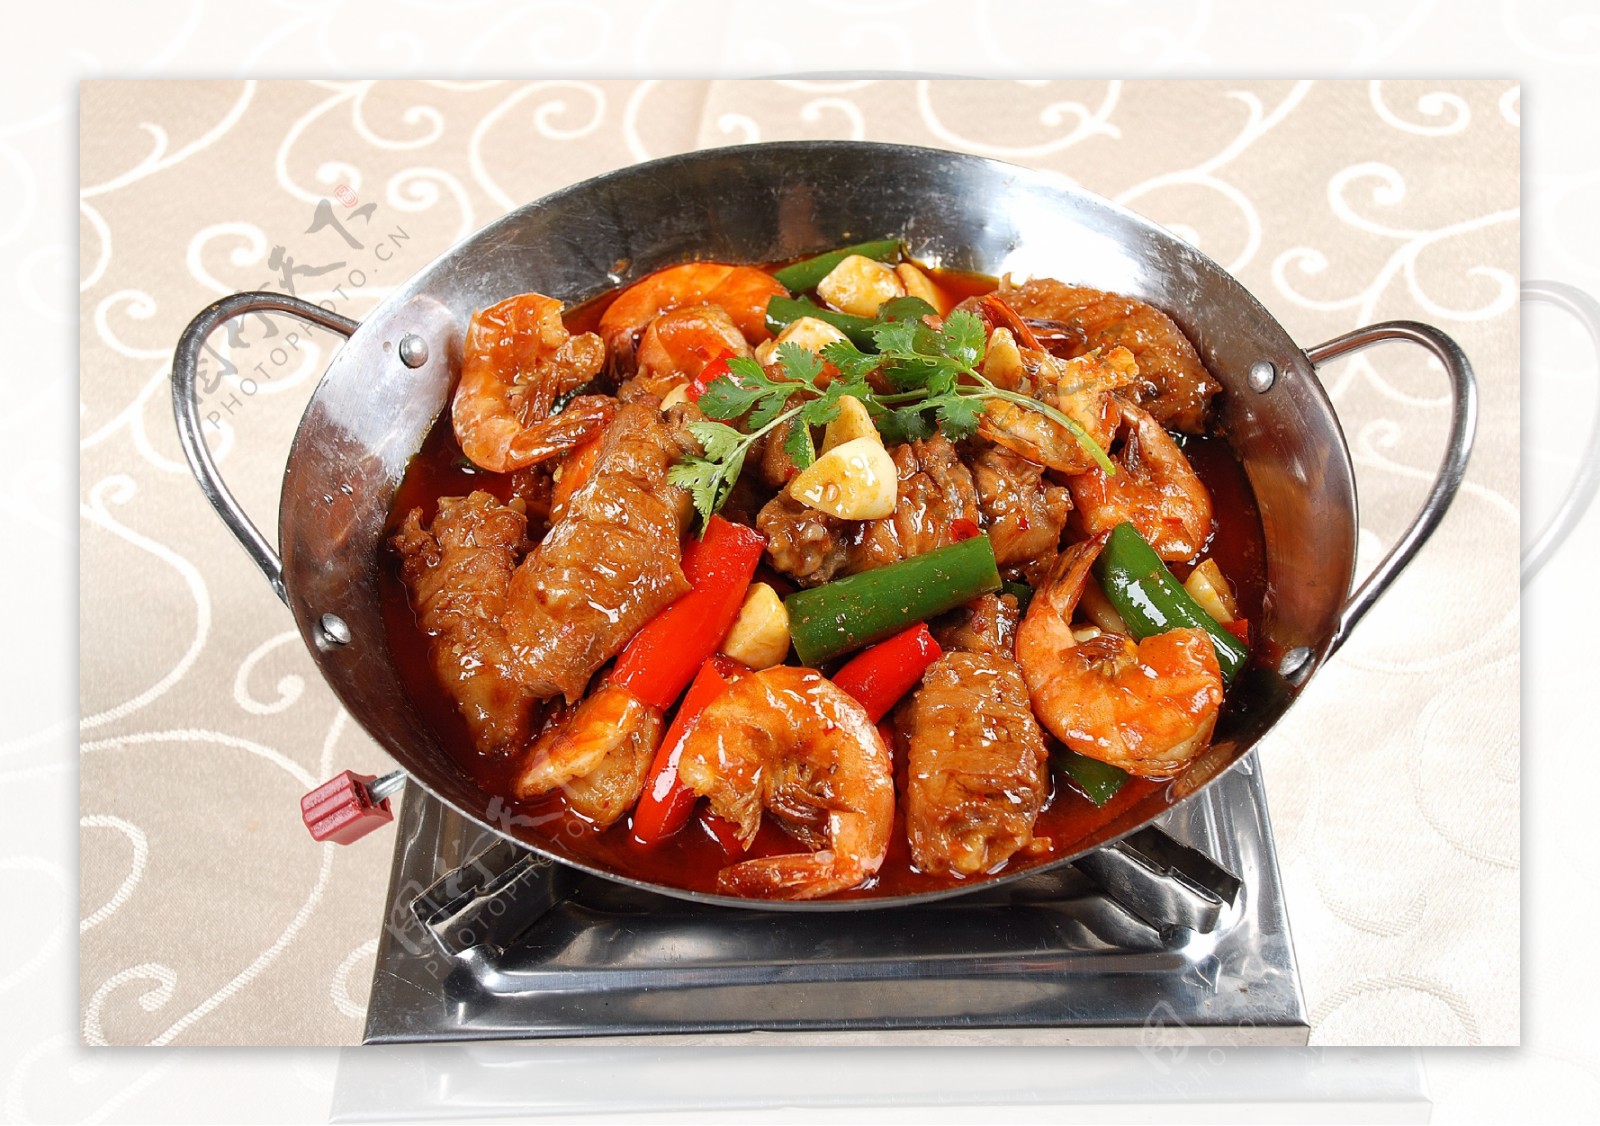 黄哈儿干锅香油适用于干锅、香锅、烤鱼系列，增加香味、去腥 - 知乎